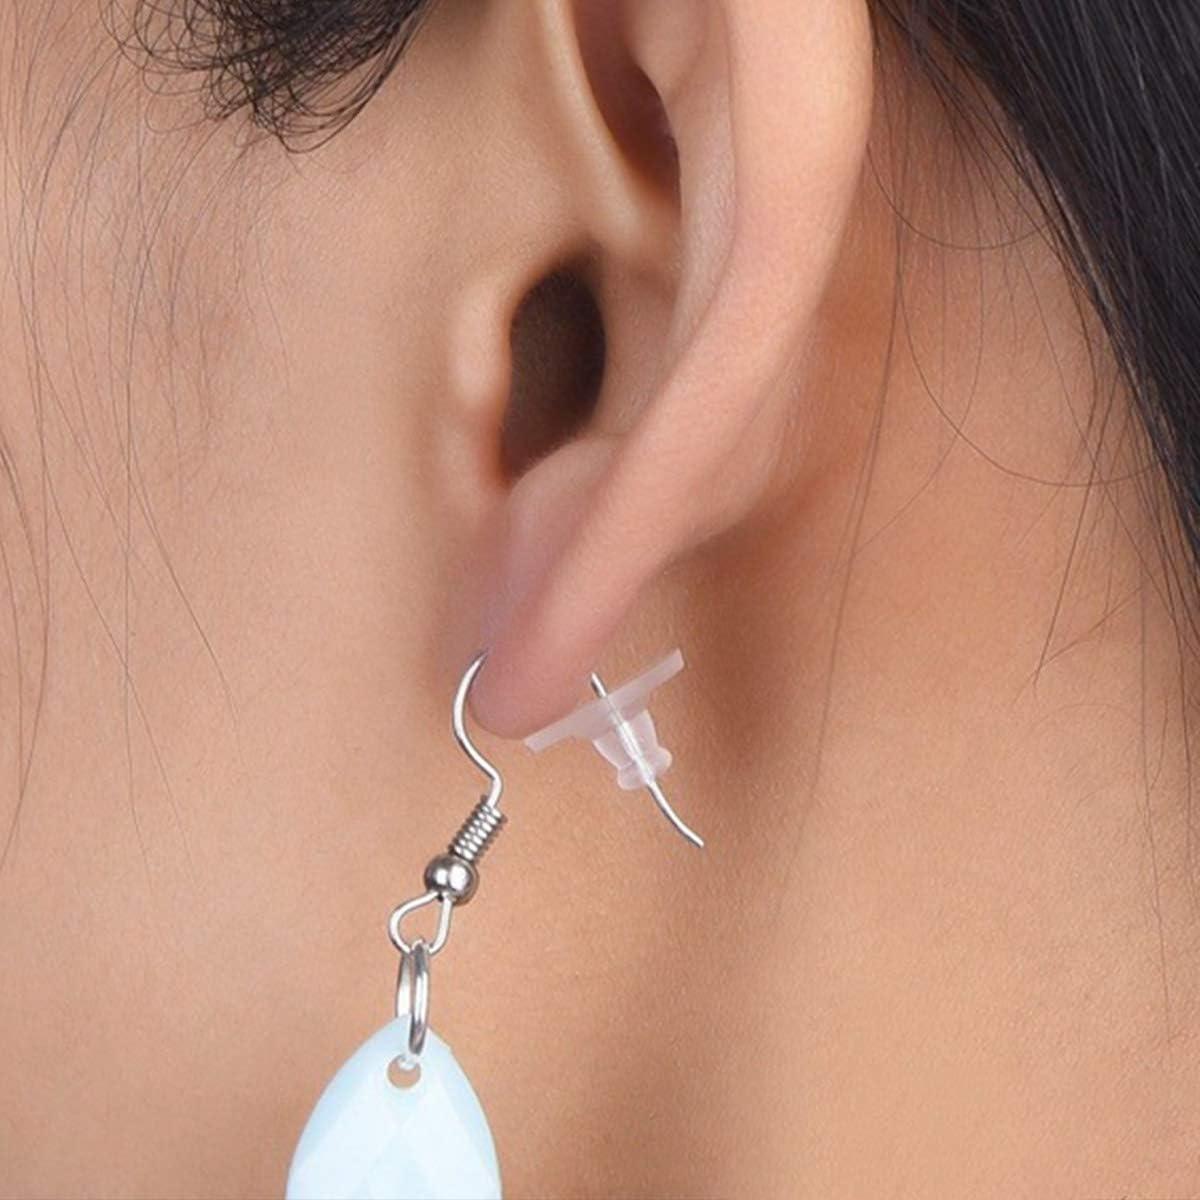 100pcs Earring Backs, Ear Stud Backs (earlobe), Ear Backs (ear Support) For  Heavy Earrings